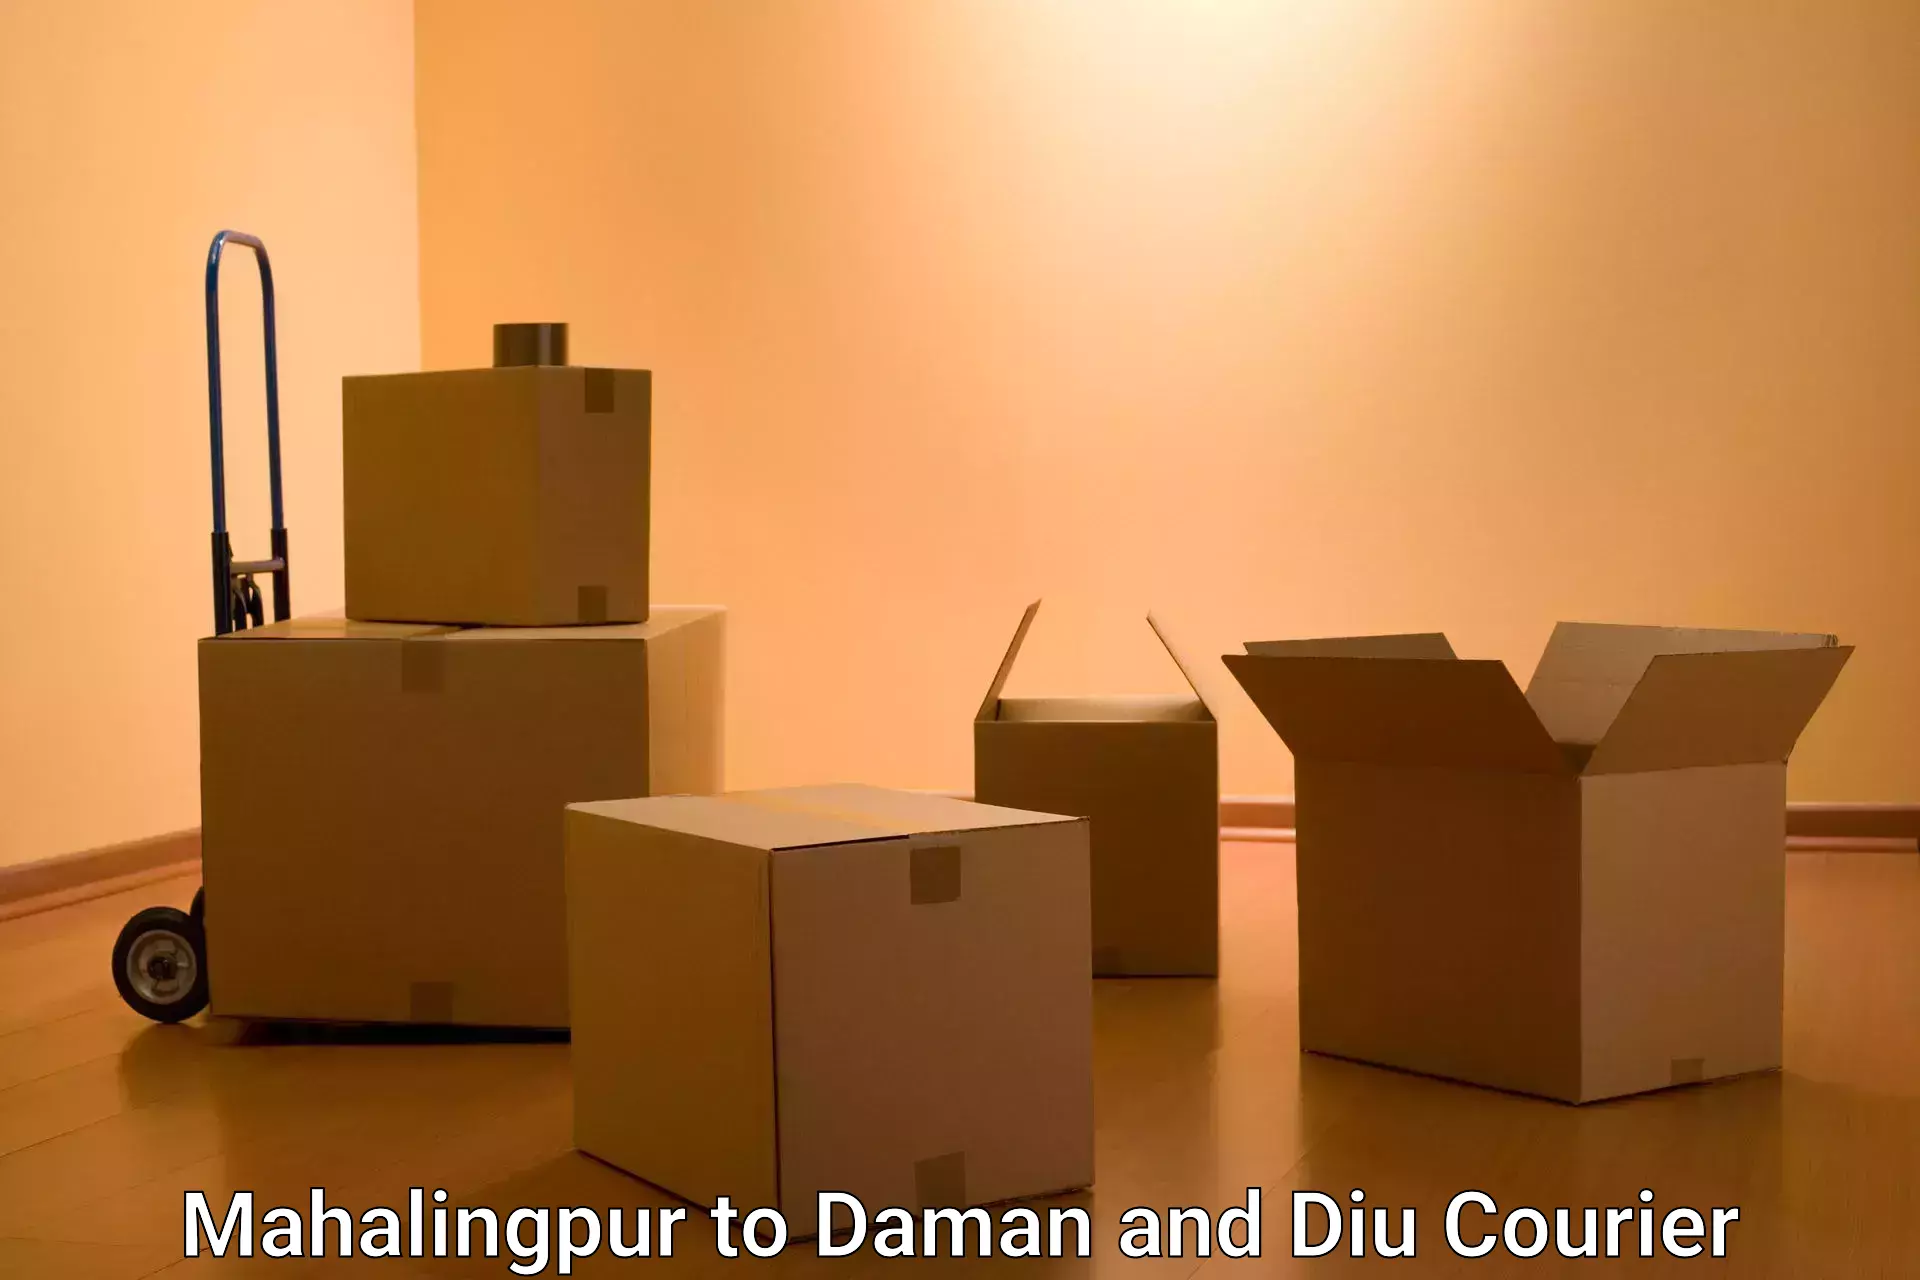 Quality courier partnerships Mahalingpur to Daman and Diu